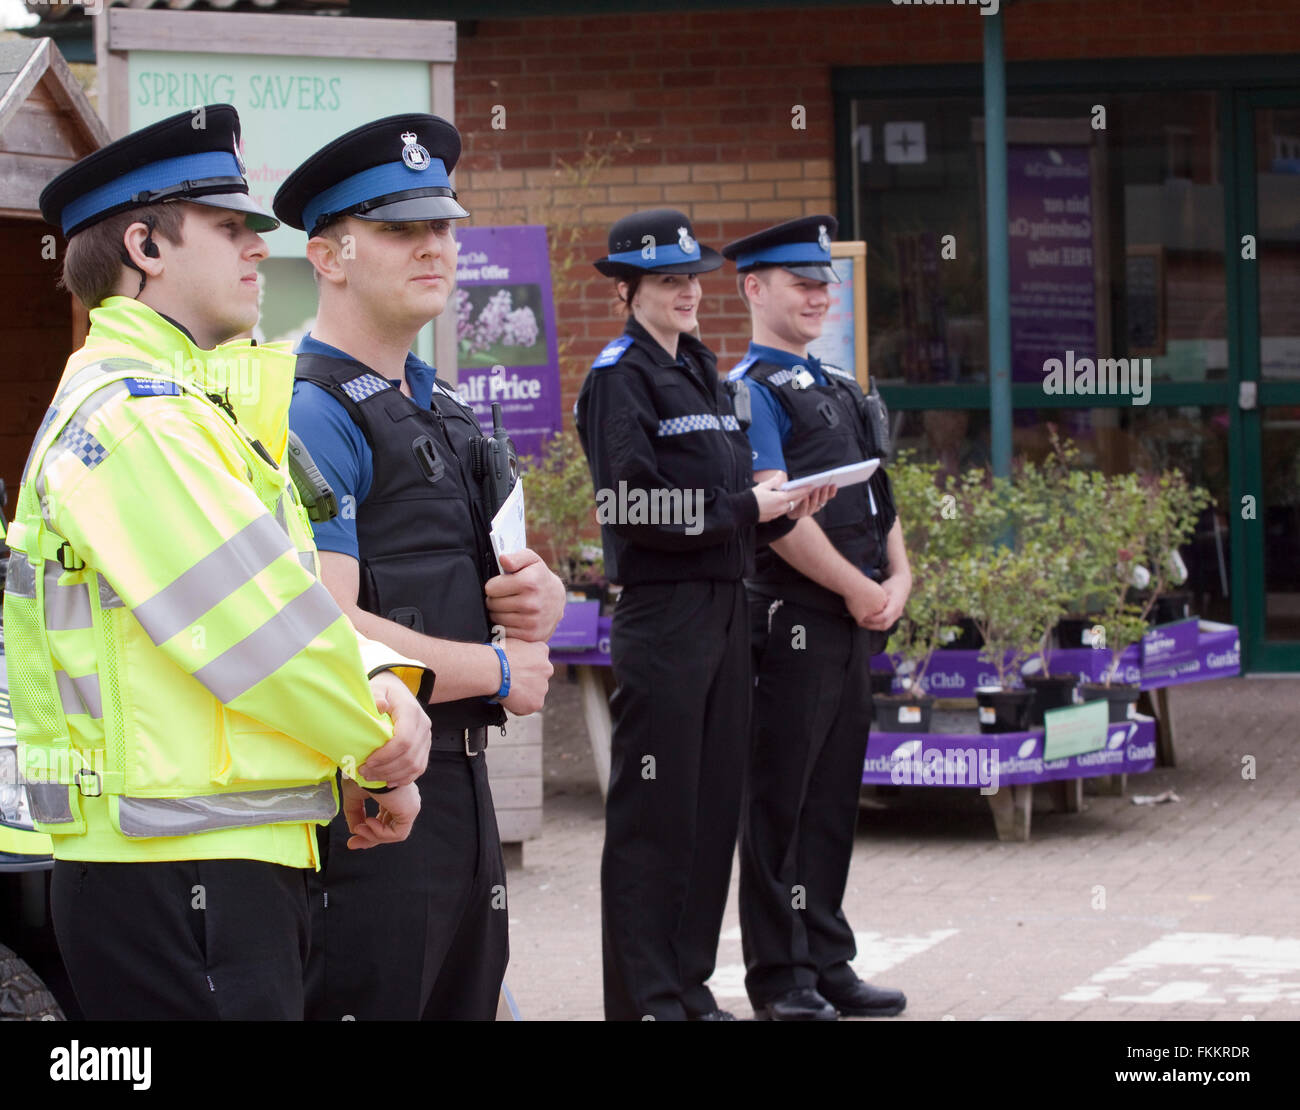 Neu ausgebildeten Polizei Gemeinschaft Offiziere bei einem Treffen zu unterstützen und begrüßen Sie in einem Gartencenter Stockfoto